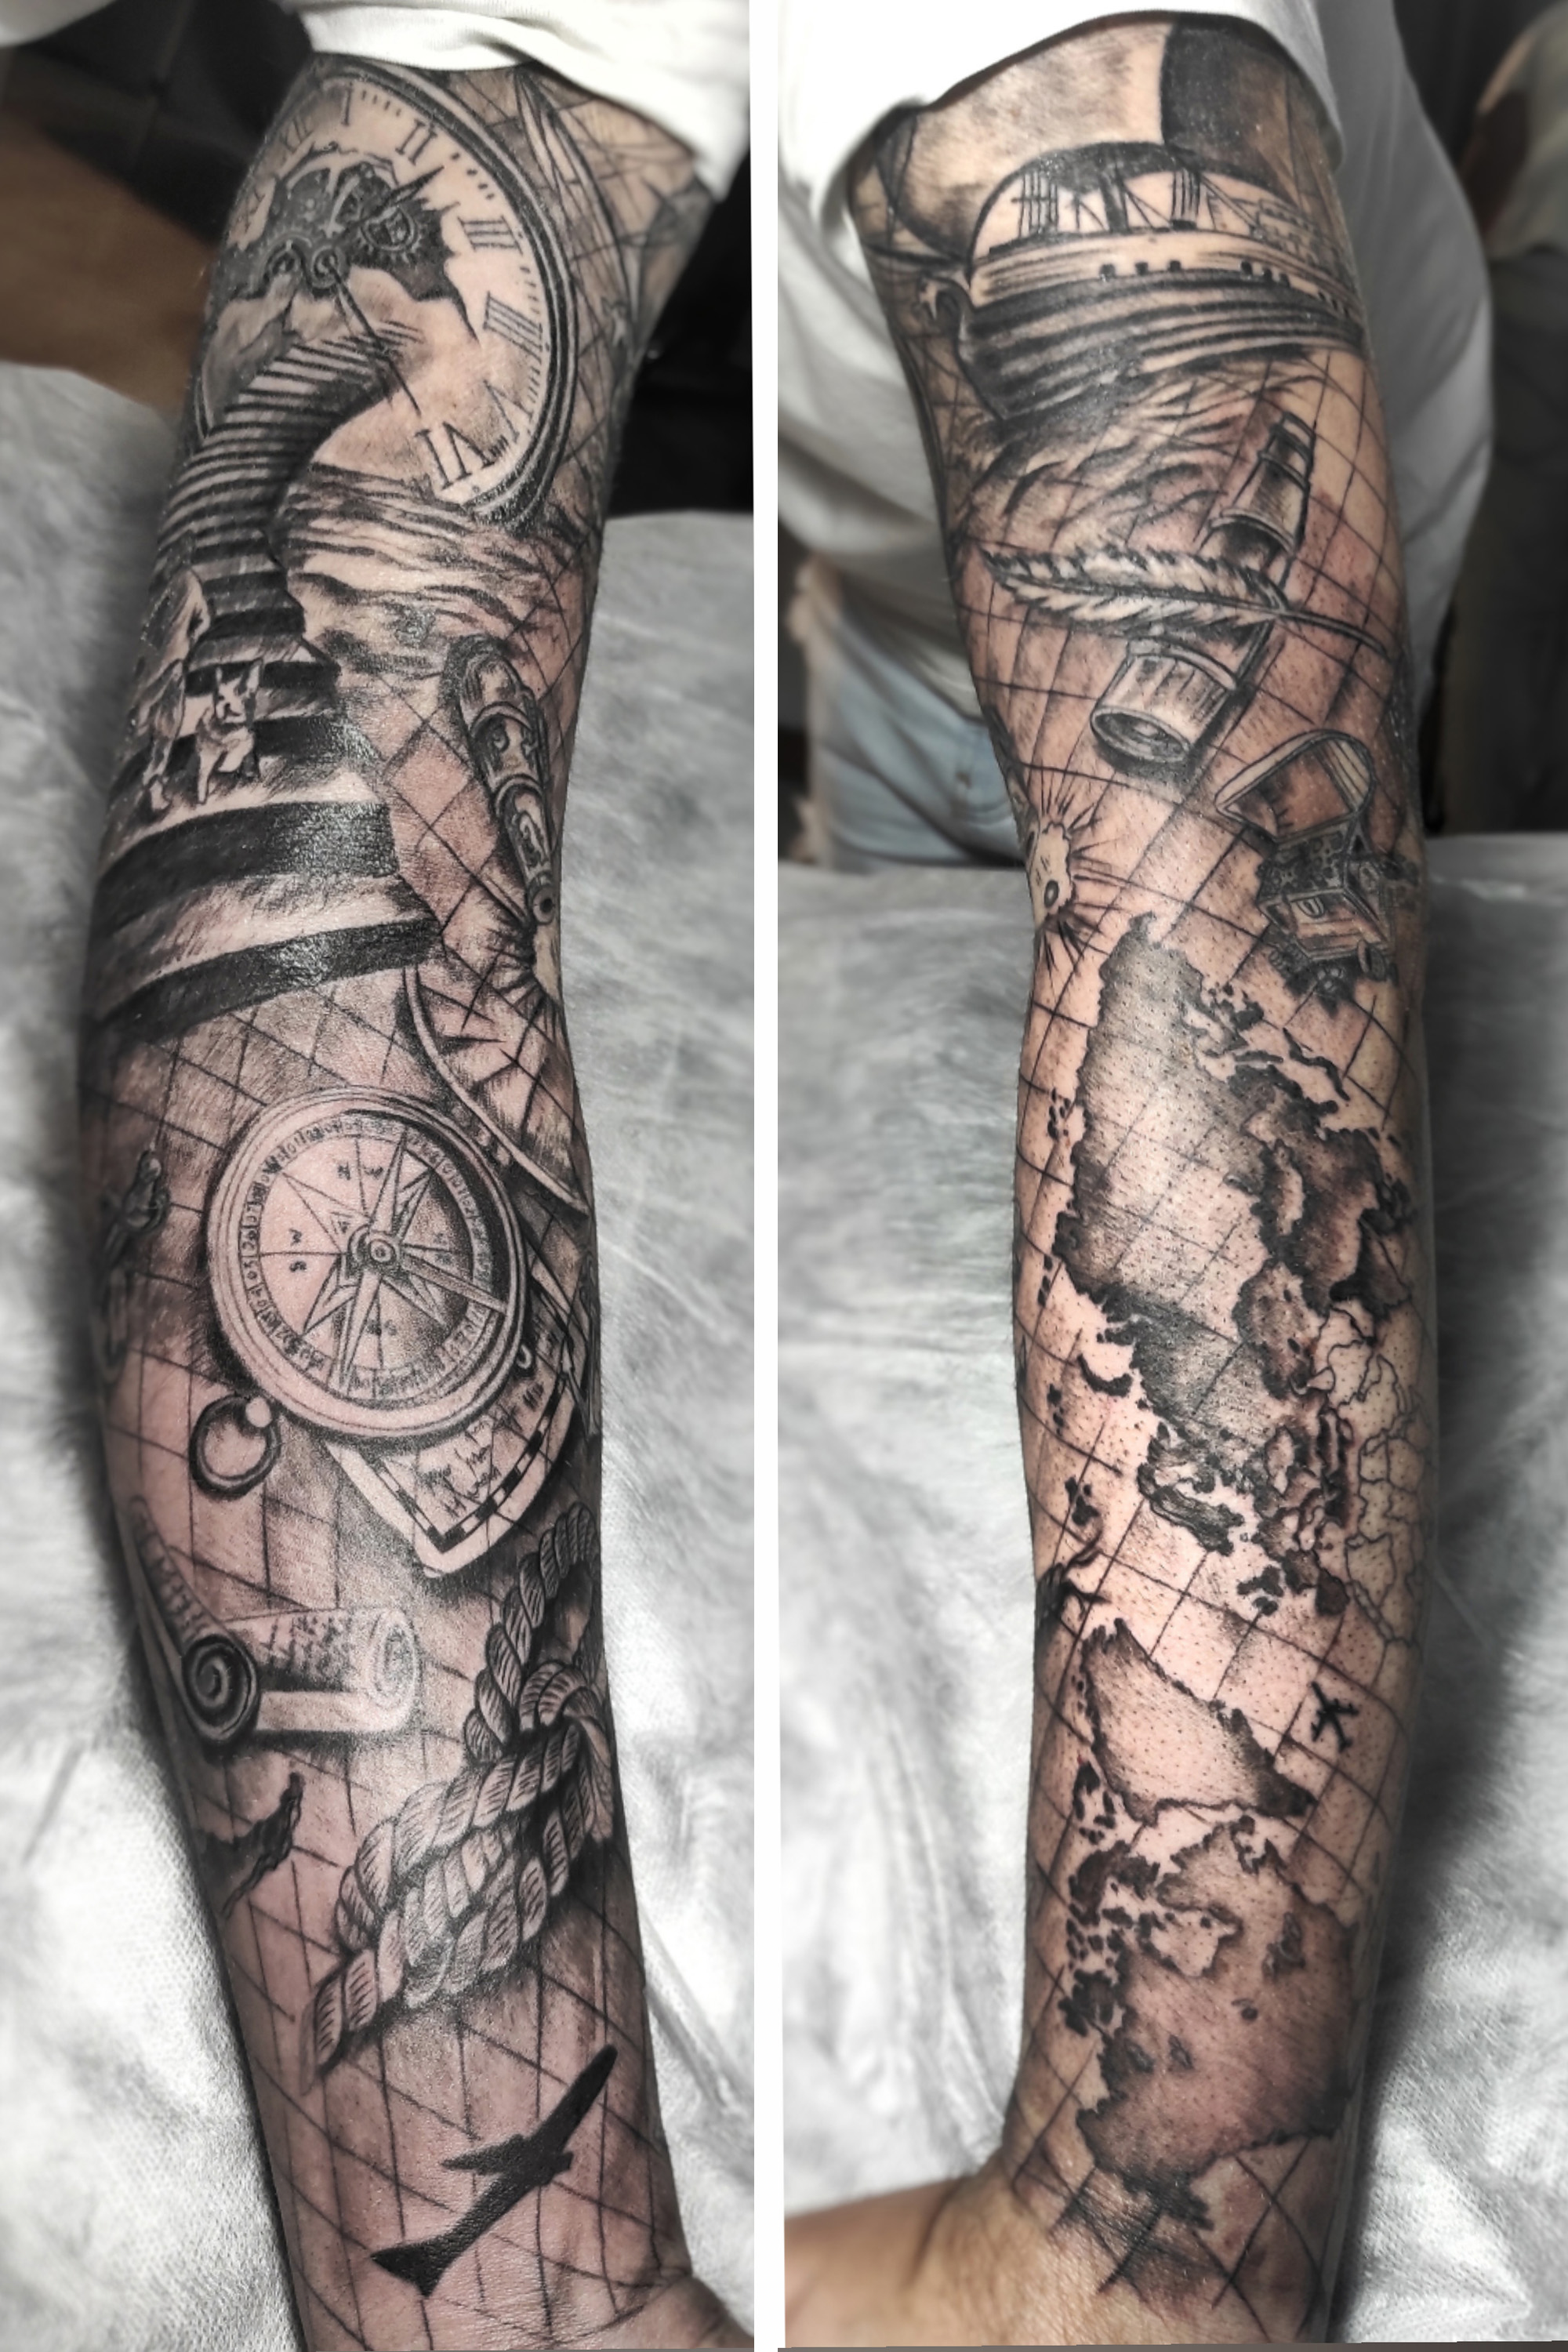 Brazo entero tatuado en realismo dedicado a los viajes y el mar